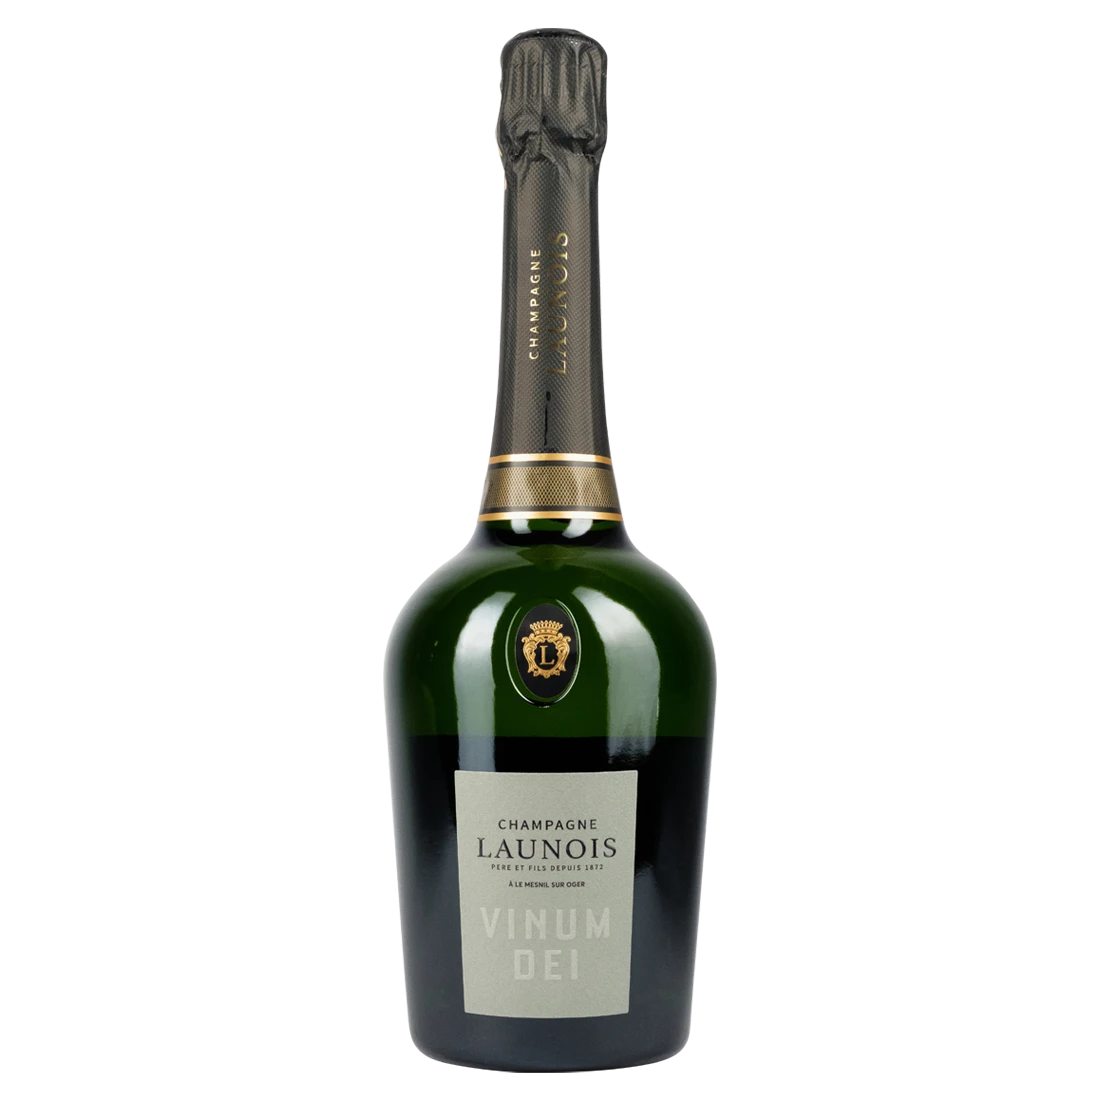 Champagne Launois Vinum Dei 